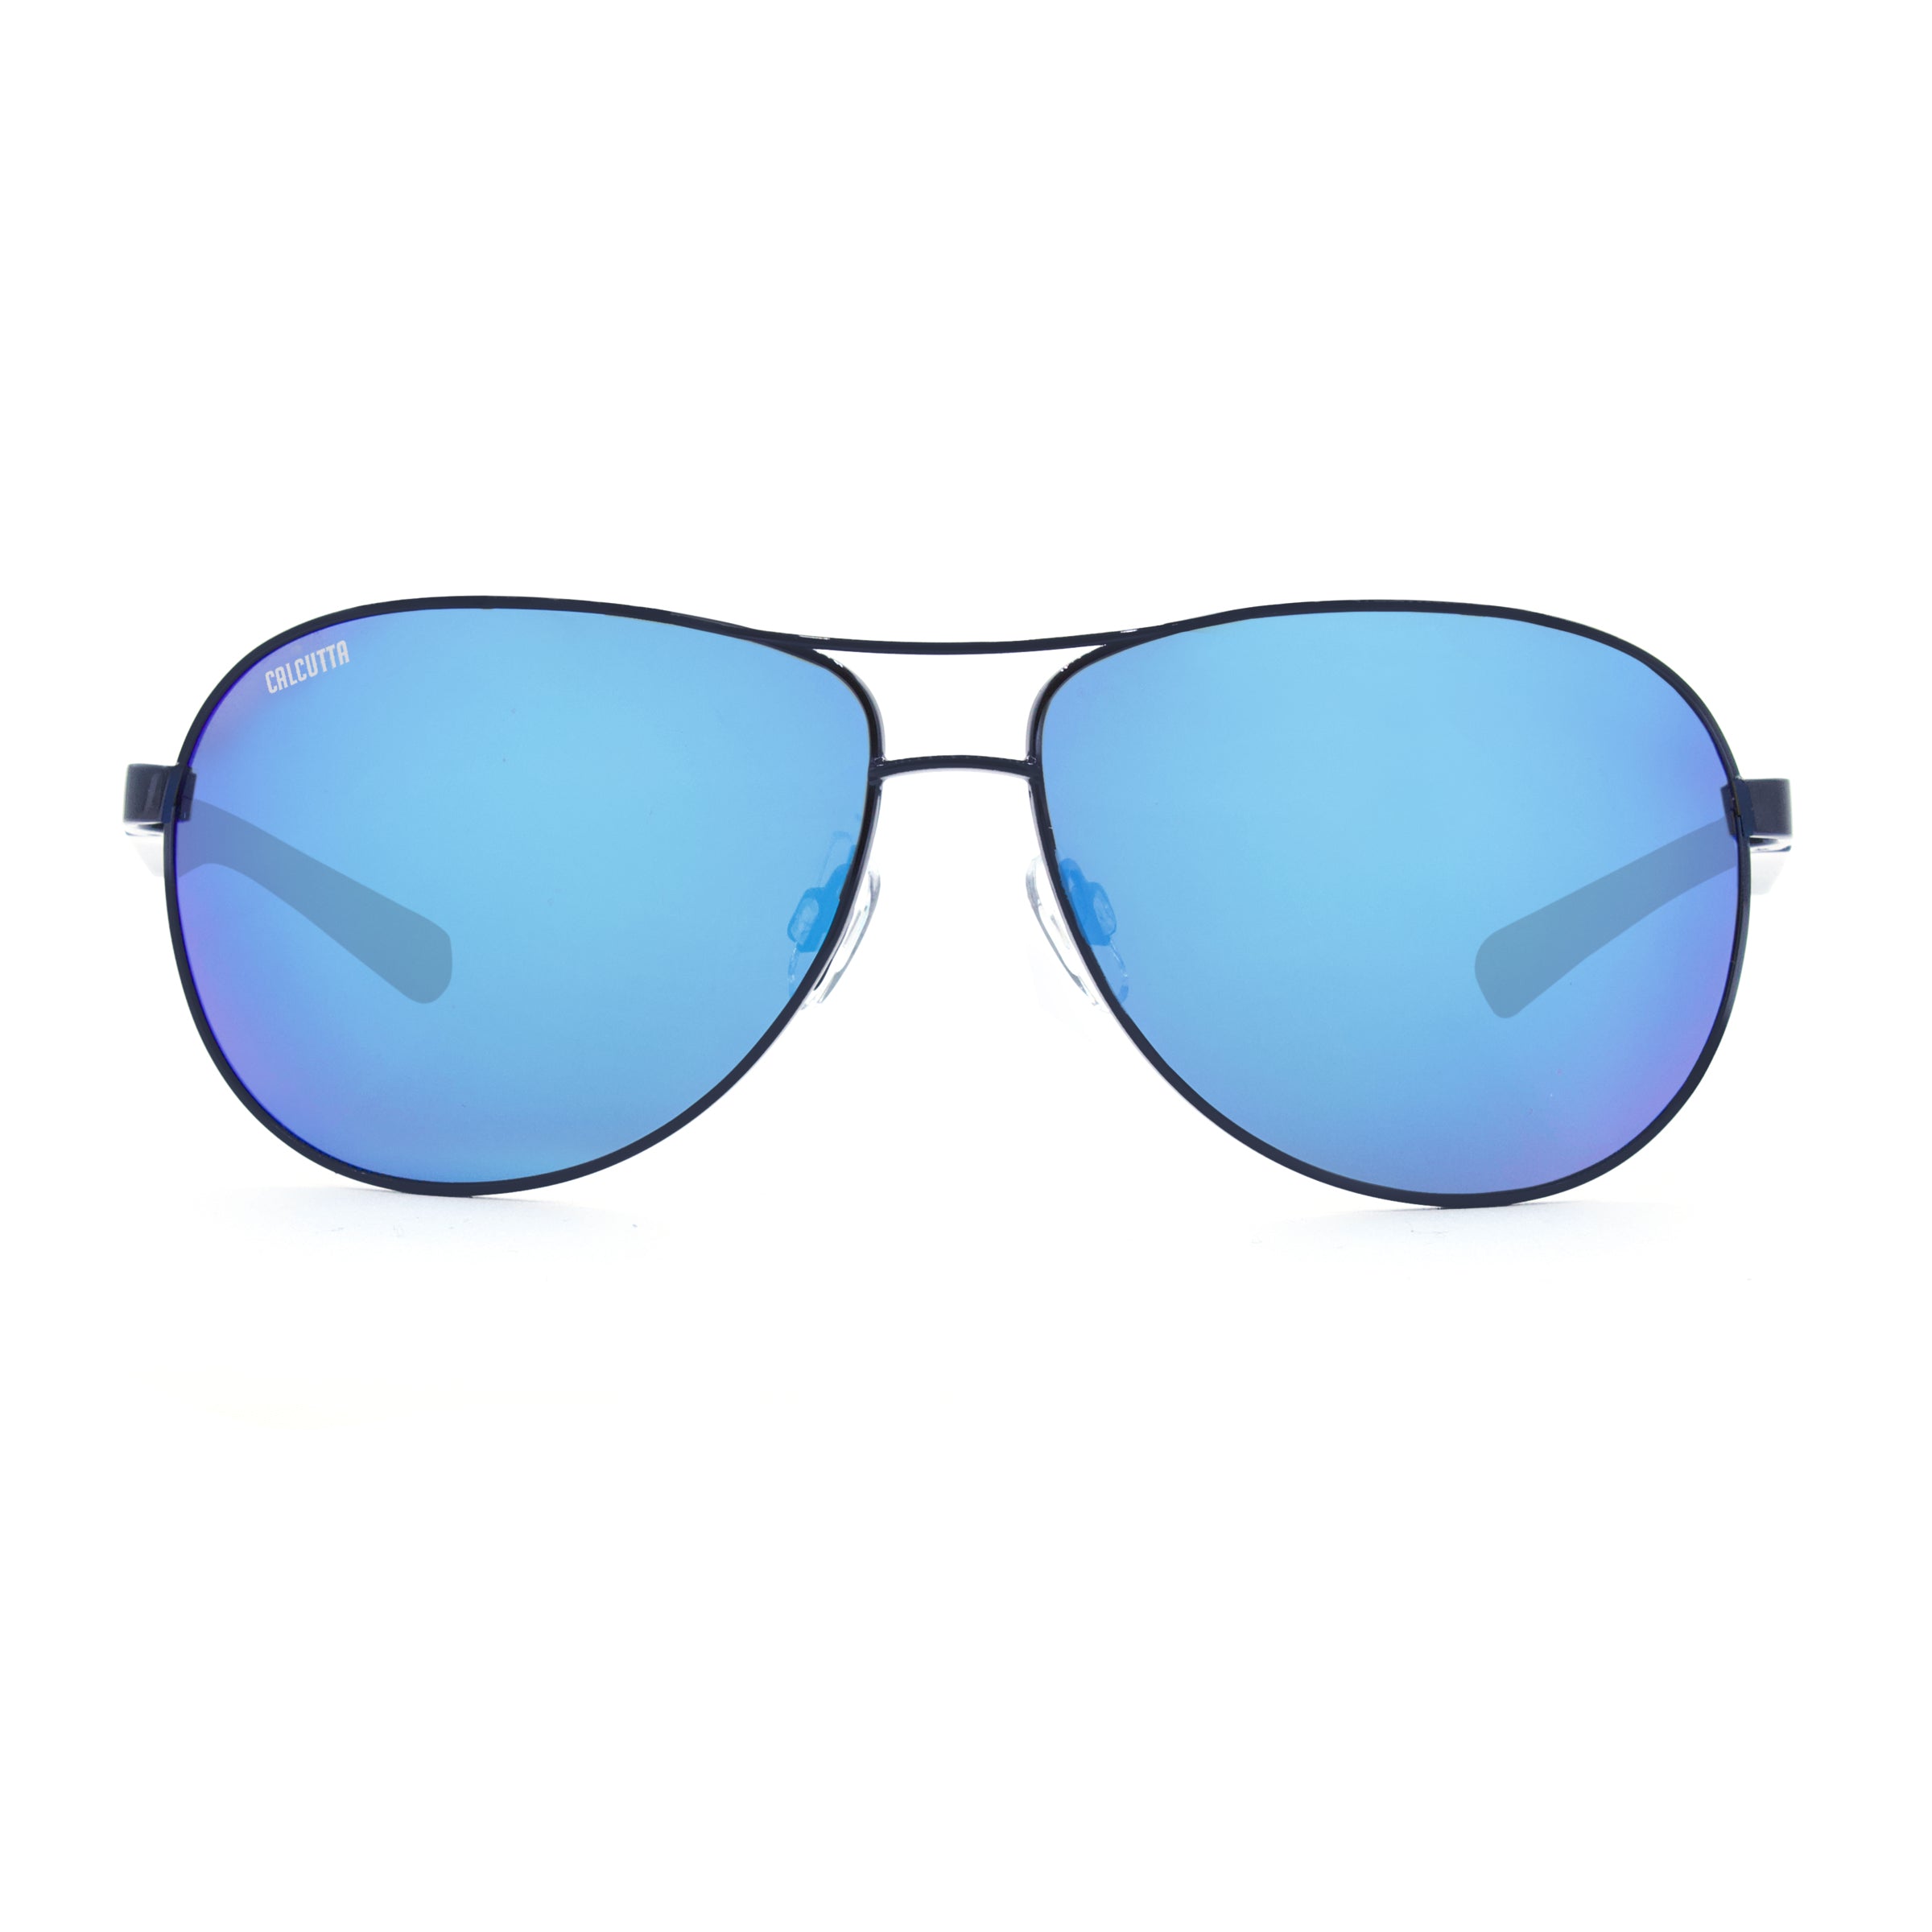 Calcutta Maverick sunglasses blue mirror front